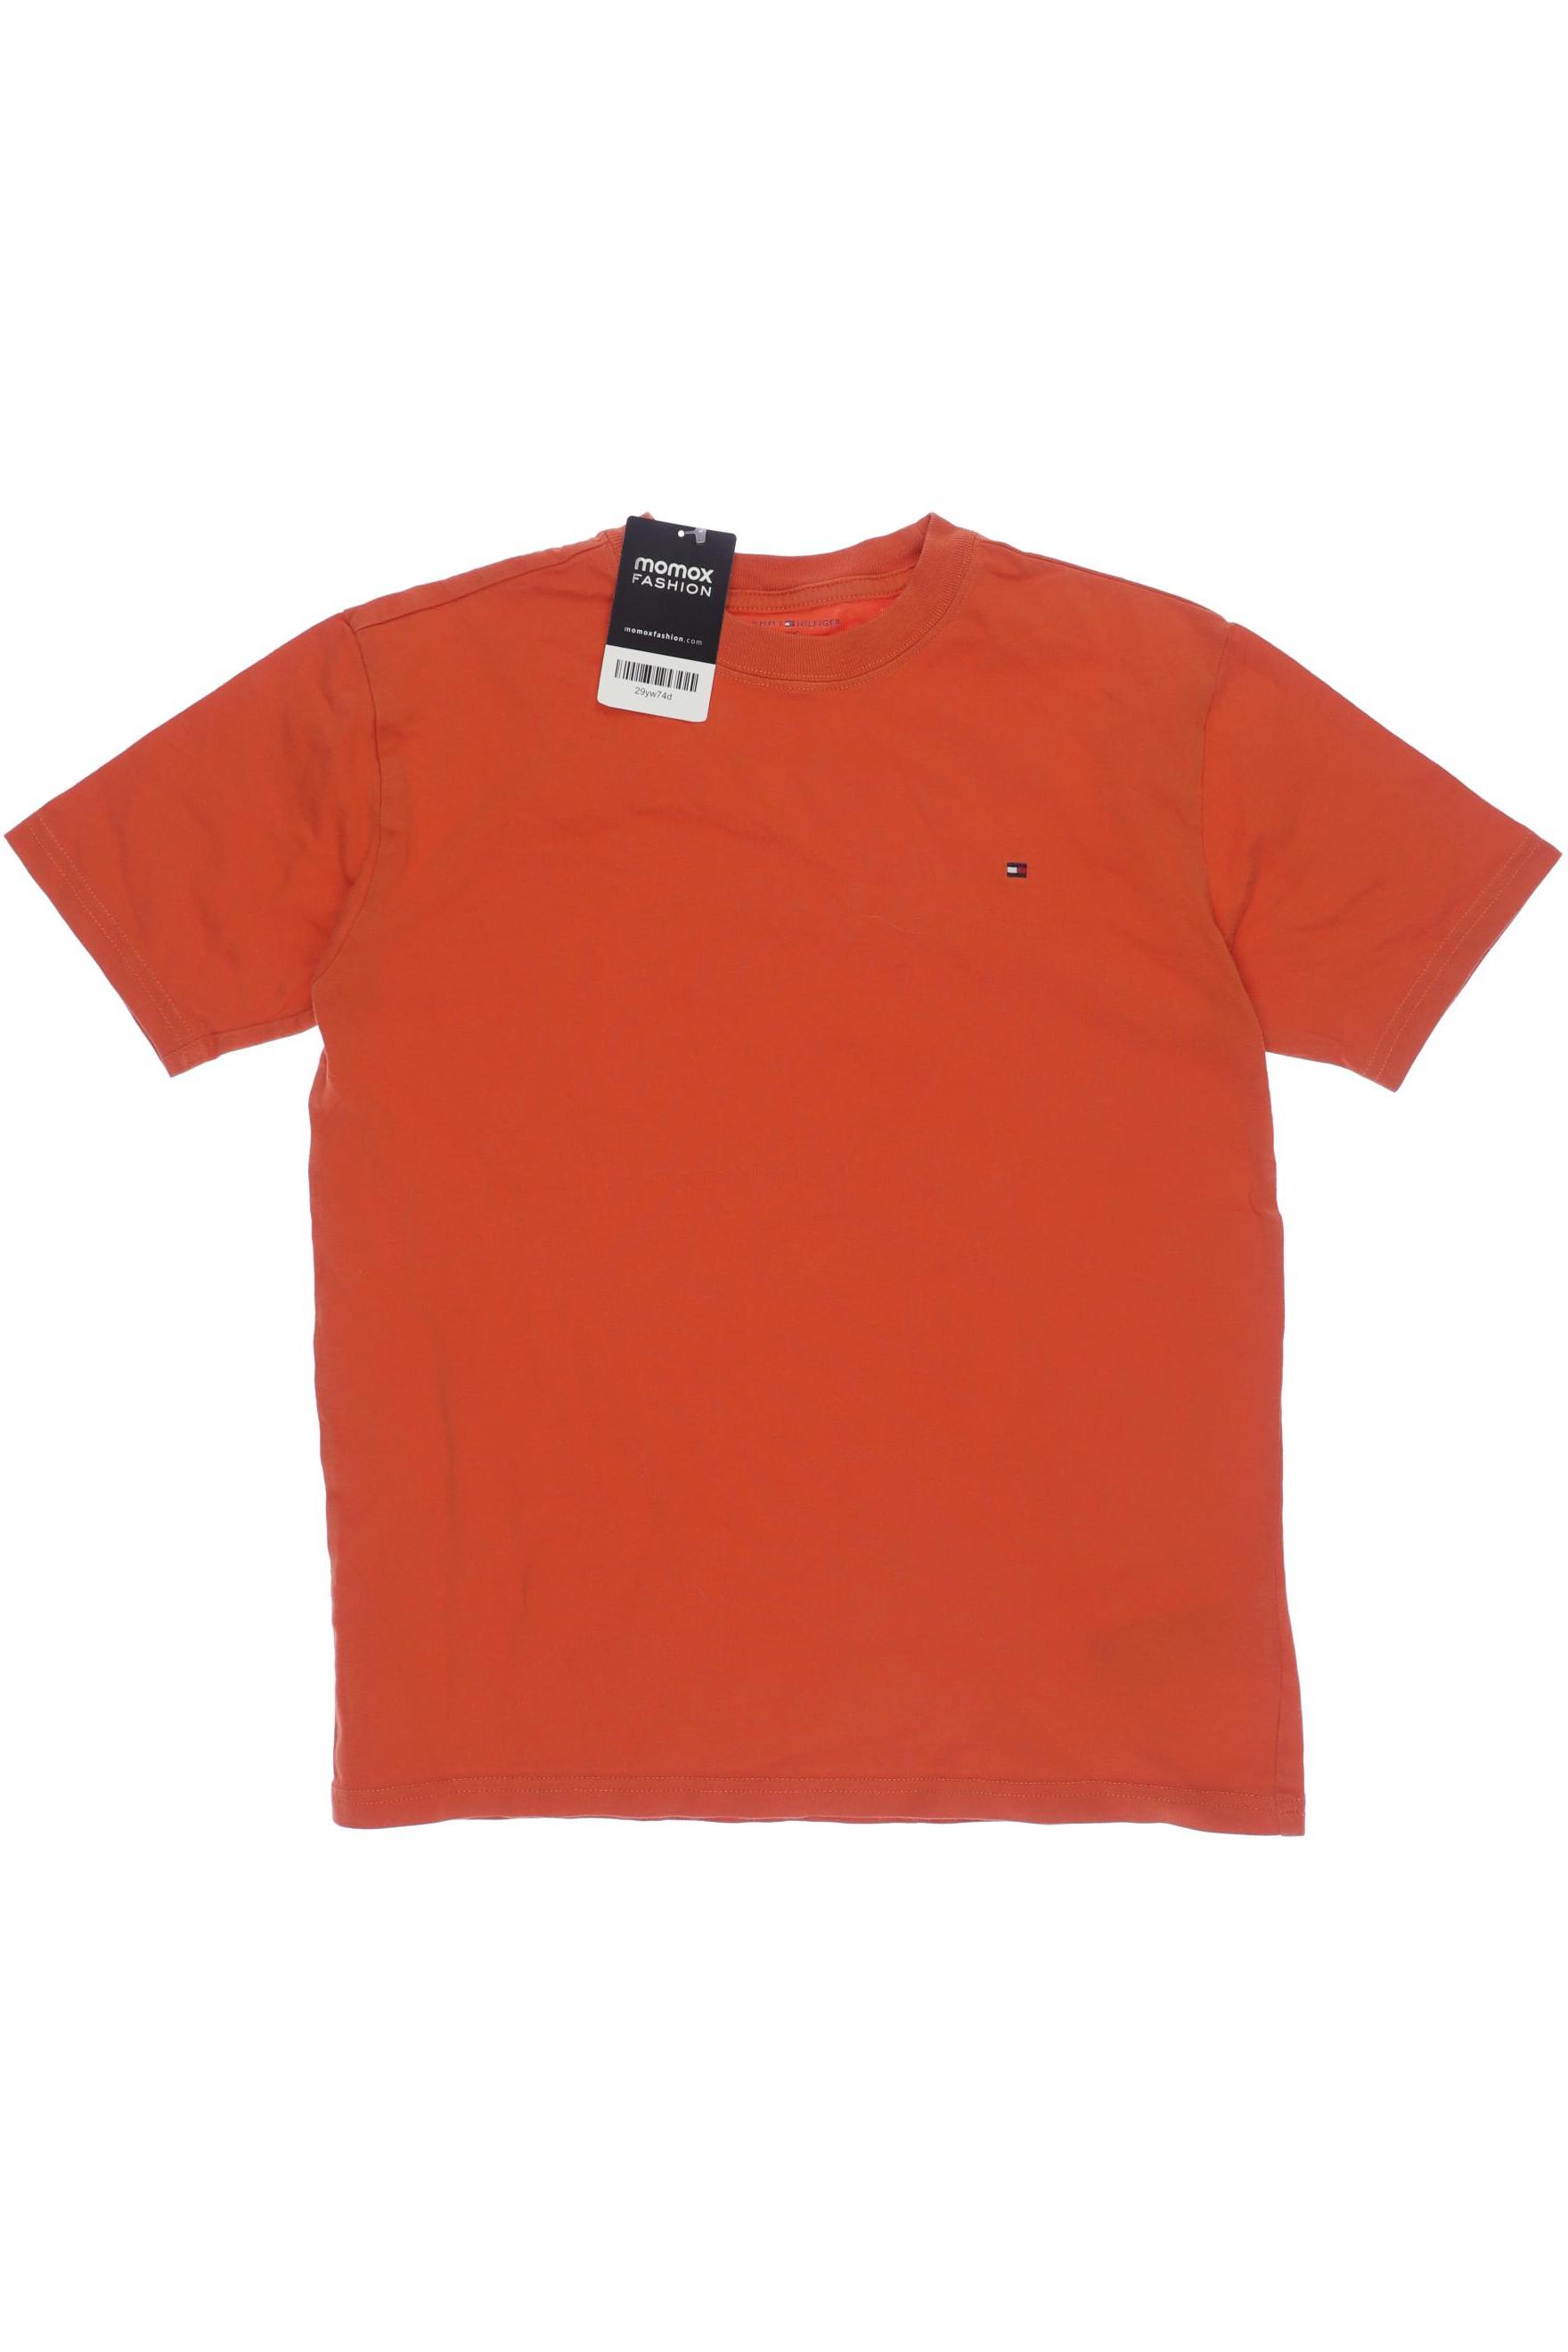 Tommy Hilfiger Jungen T-Shirt, orange von Tommy Hilfiger